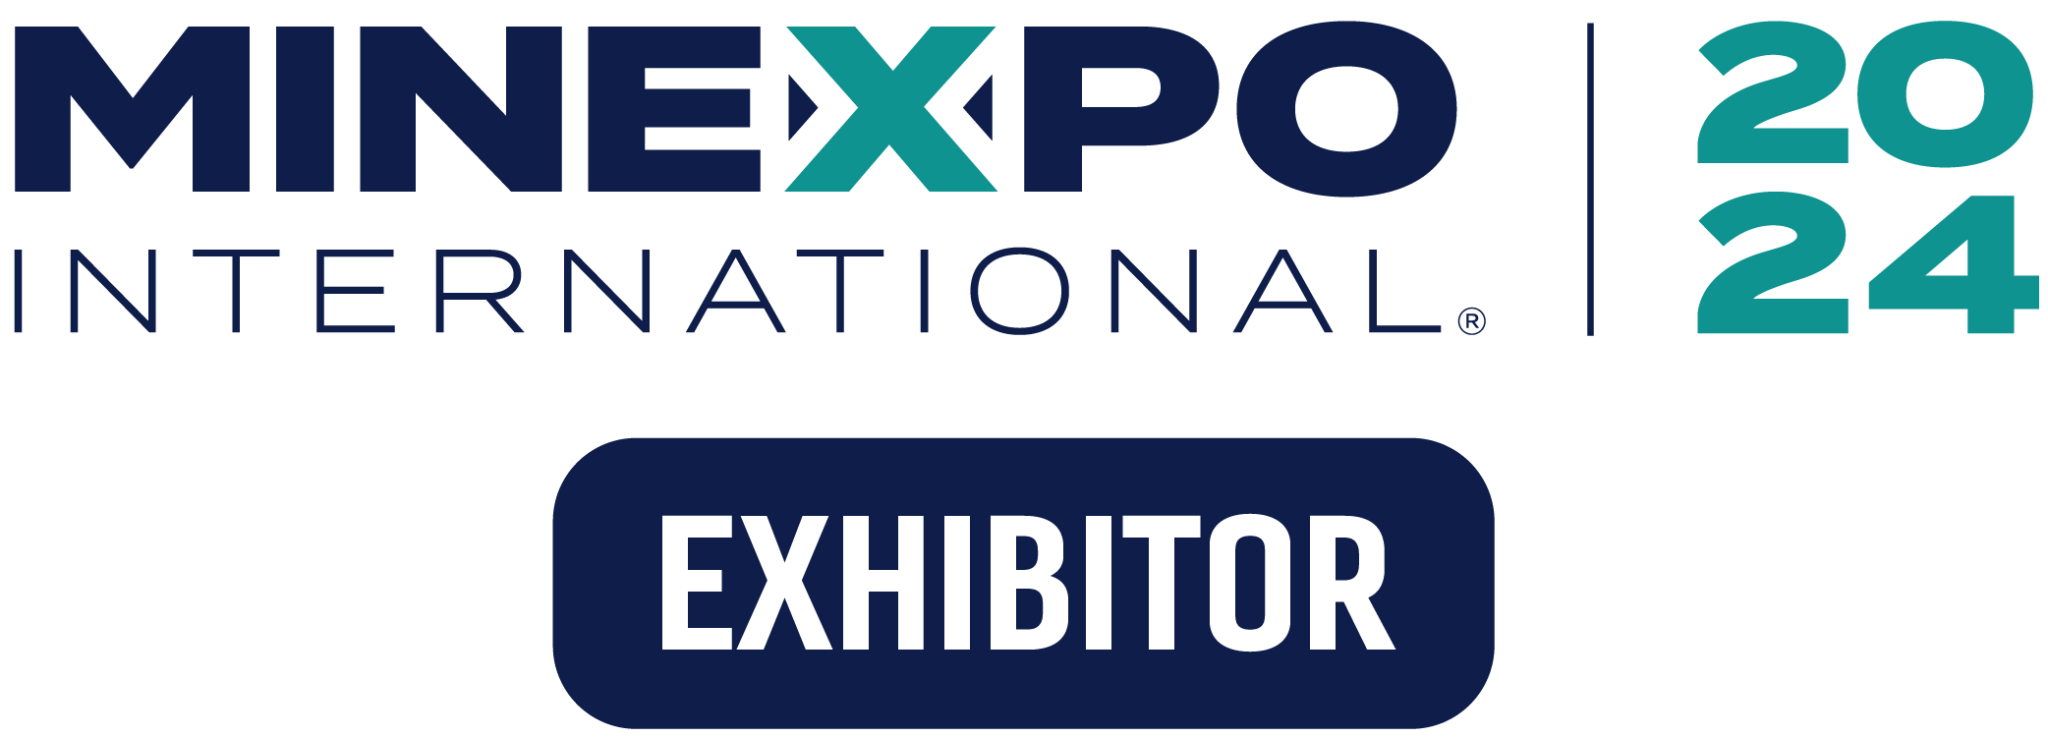 Exhibitor Toolkit MINExpo INTERNATIONAL • MINExpo INTERNATIONAL